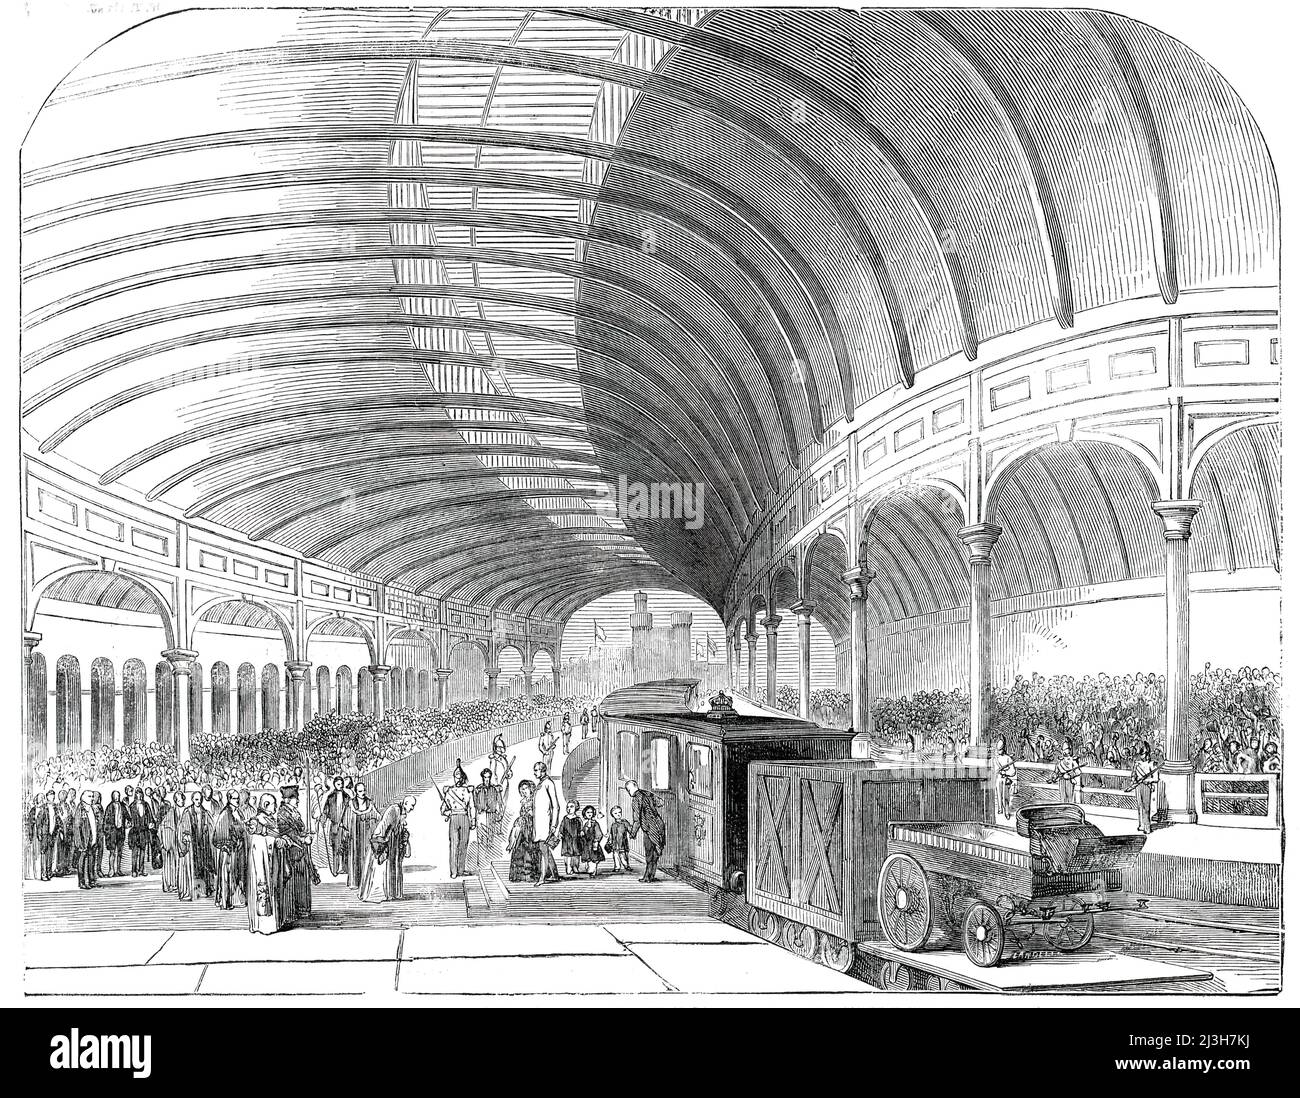 Empfang Ihrer Majestät am Großen Hauptbahnhof, Newcastle-upon-Tyne, 1850. Königin Victoria, Prinz Albert und Kinder werden von Würdenträgern an der Station begrüßt, die ihre Majestät offiziell eröffnet hat. Diese Station besteht in der Breite aus drei Bögen, die überall auf hellen Eisensäulen gestützt werden, das Dach aus offenem Eisenwerk, gut beleuchtet, höher als solche Strukturen normalerweise sind, und das ganze Gebäude ist ungewöhnlich luftig und anmutig. Der gesamte verfügbare Raum innerhalb dieser herrlichen Vergießen wurde von den Bewohnern von Newcastle, die in großer Kraft versammelt, um ihre Sov Stockfoto